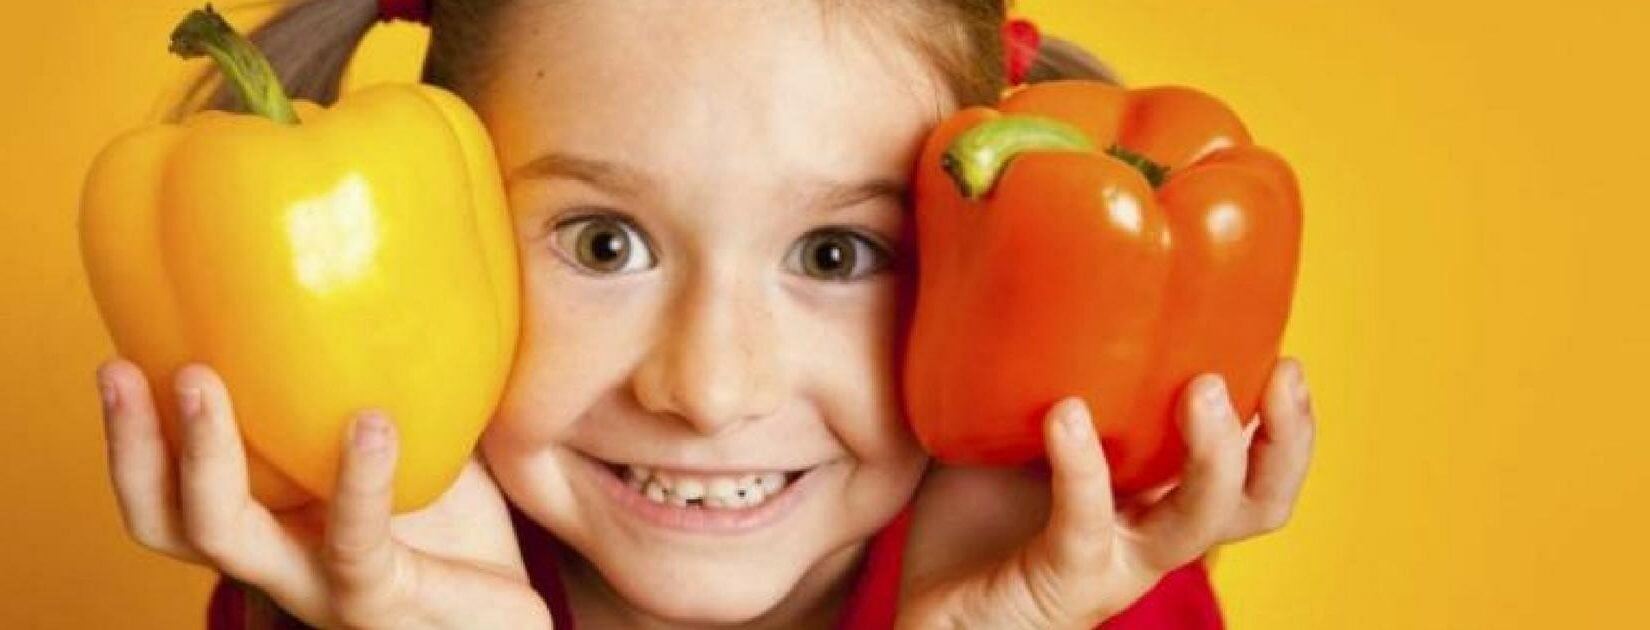 7 συστατικά & 7 τρόφιμα που βοηθάνε τα παιδιά να έχουν καλύτερη συμπεριφορά!